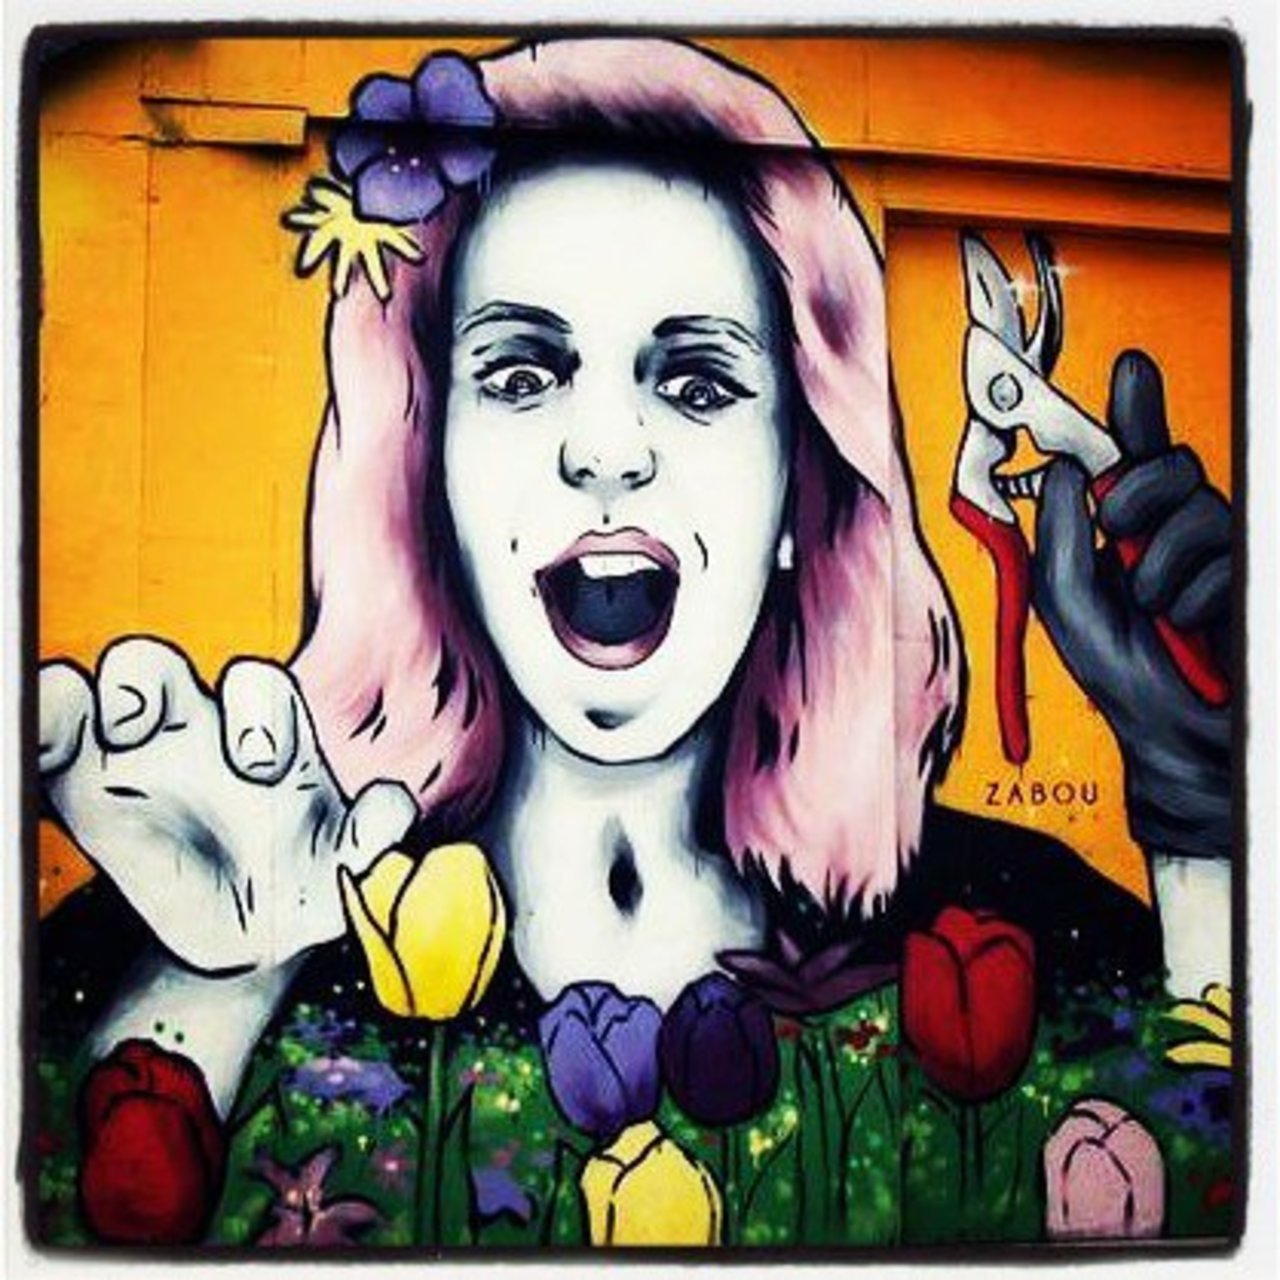 #zabouartist #streetart #art #graffiti #wallart #urbanart #zabou #londonstreetart #paris #streetartlondon #streetar… https://t.co/AoeJxkXvuU